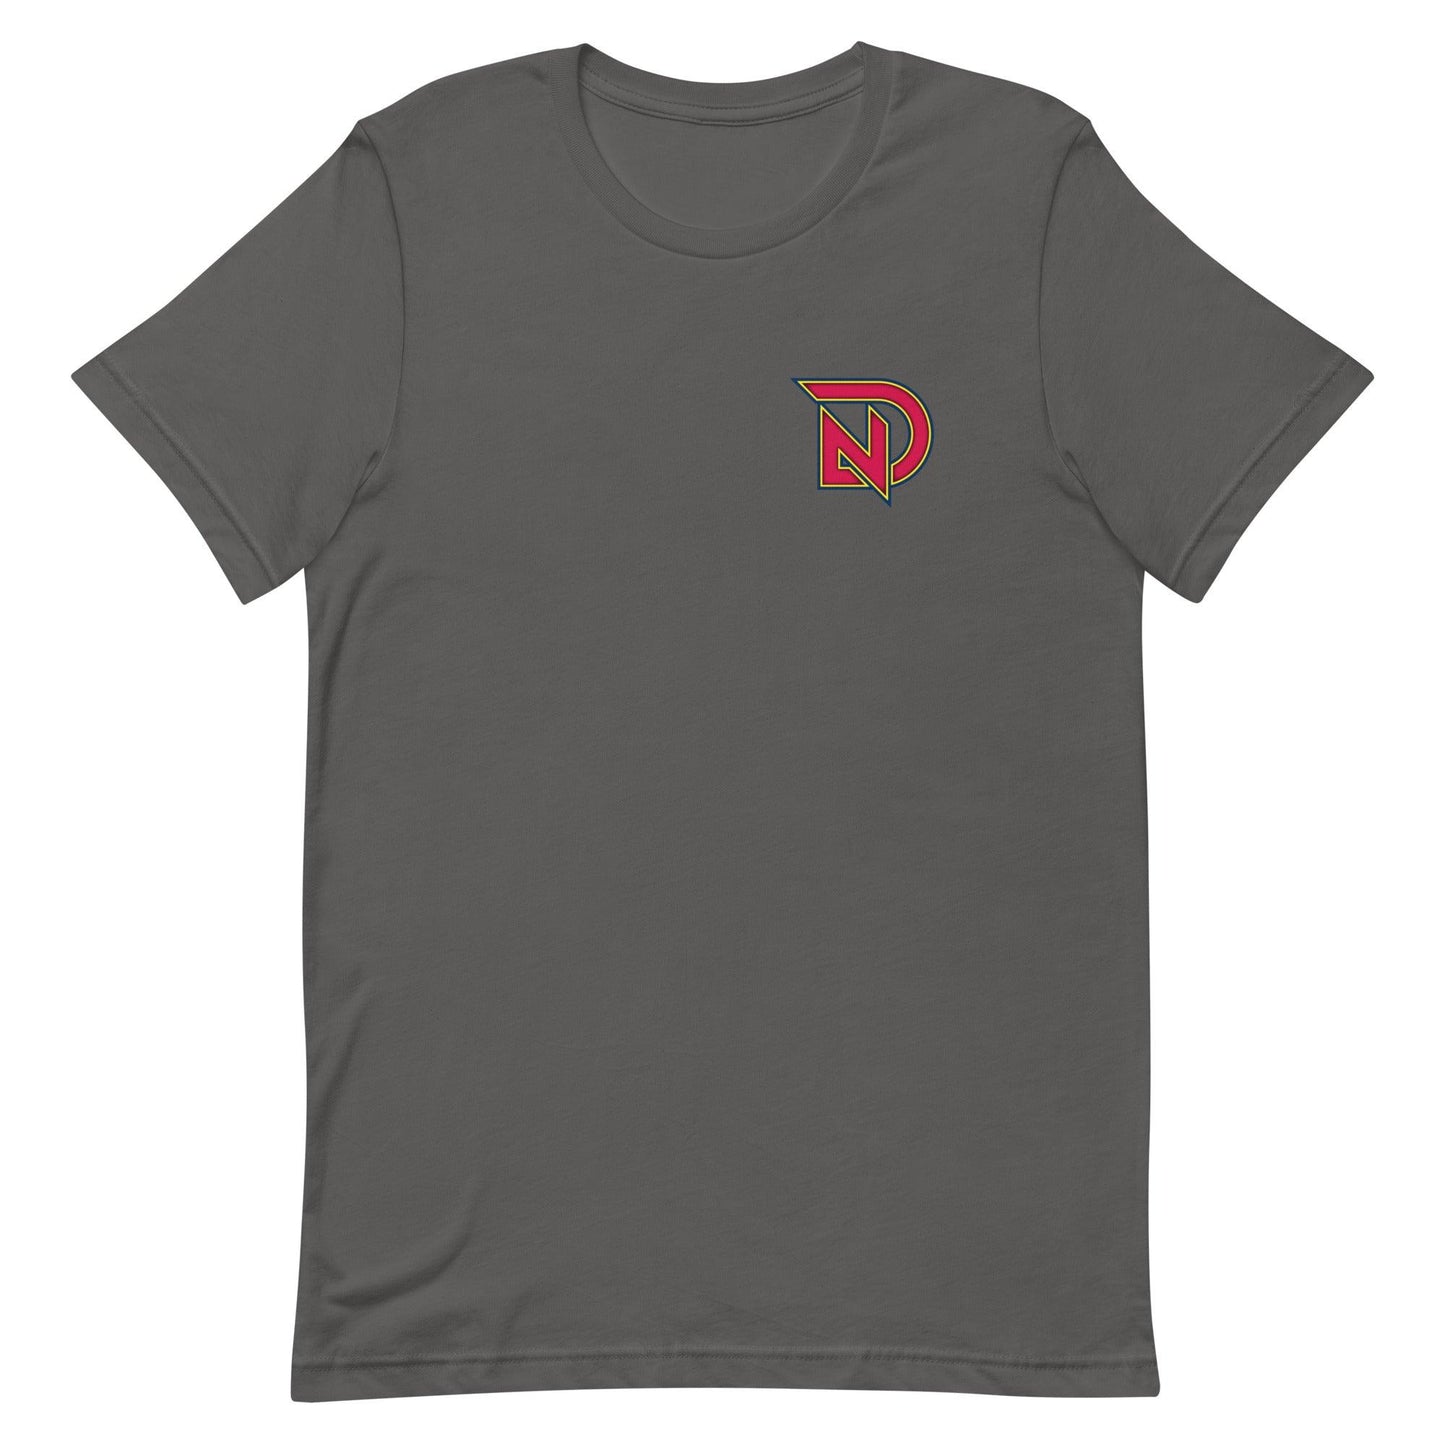 Nick Dunn "Elite" t-shirt - Fan Arch